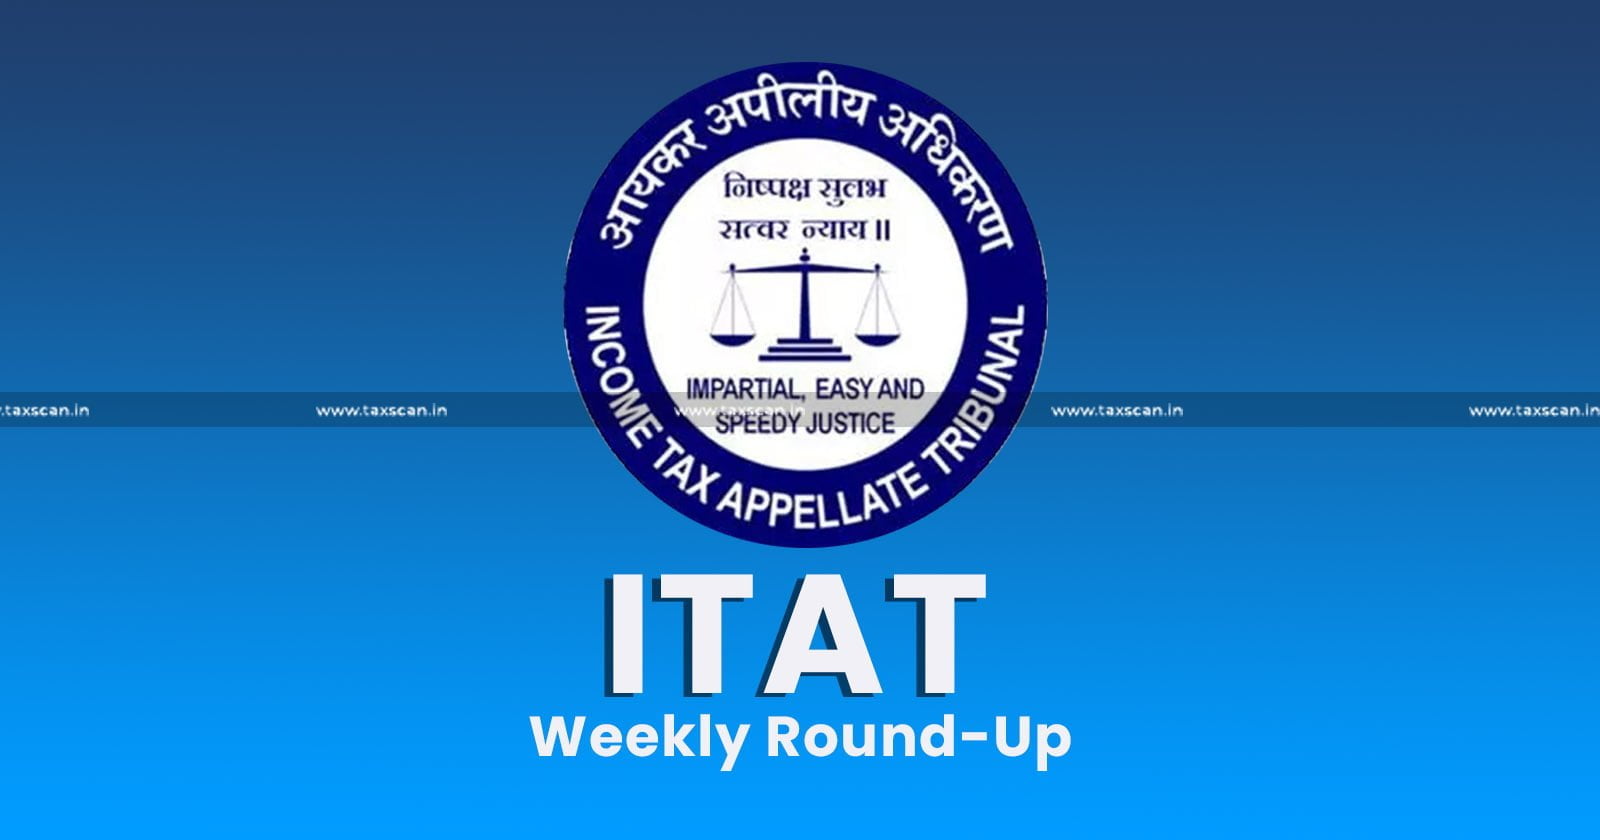 ITAT Weekly Round-Up - ITAT - Weekly Round-Up - Income Tax - taxscan